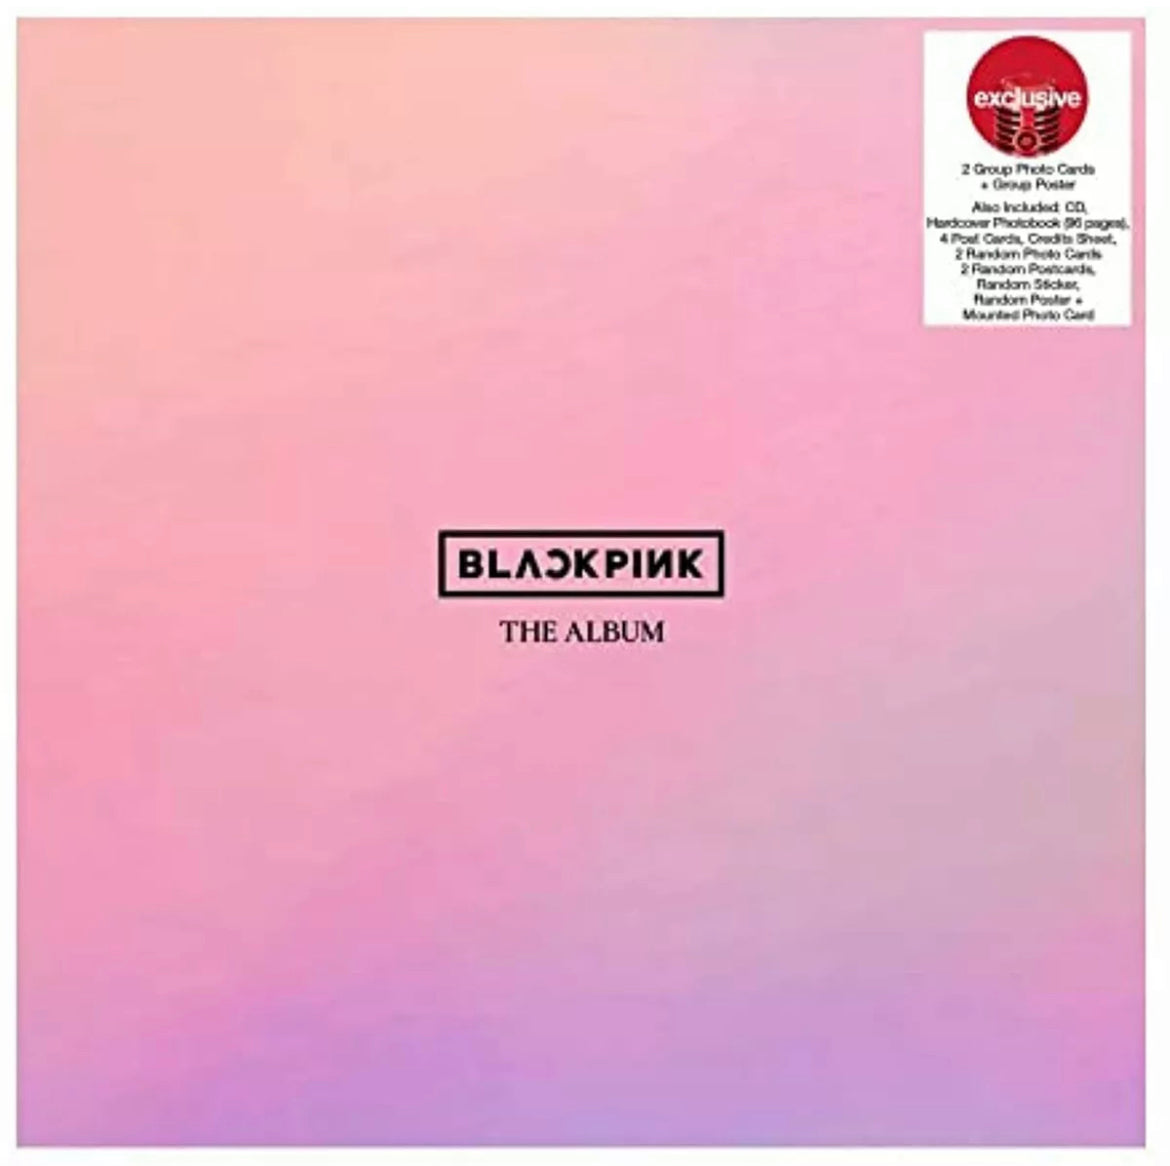 BLACKPINK THE ALBUM CD Boxset Complete Set Version 1-4 Exclusive Presale  Confirm